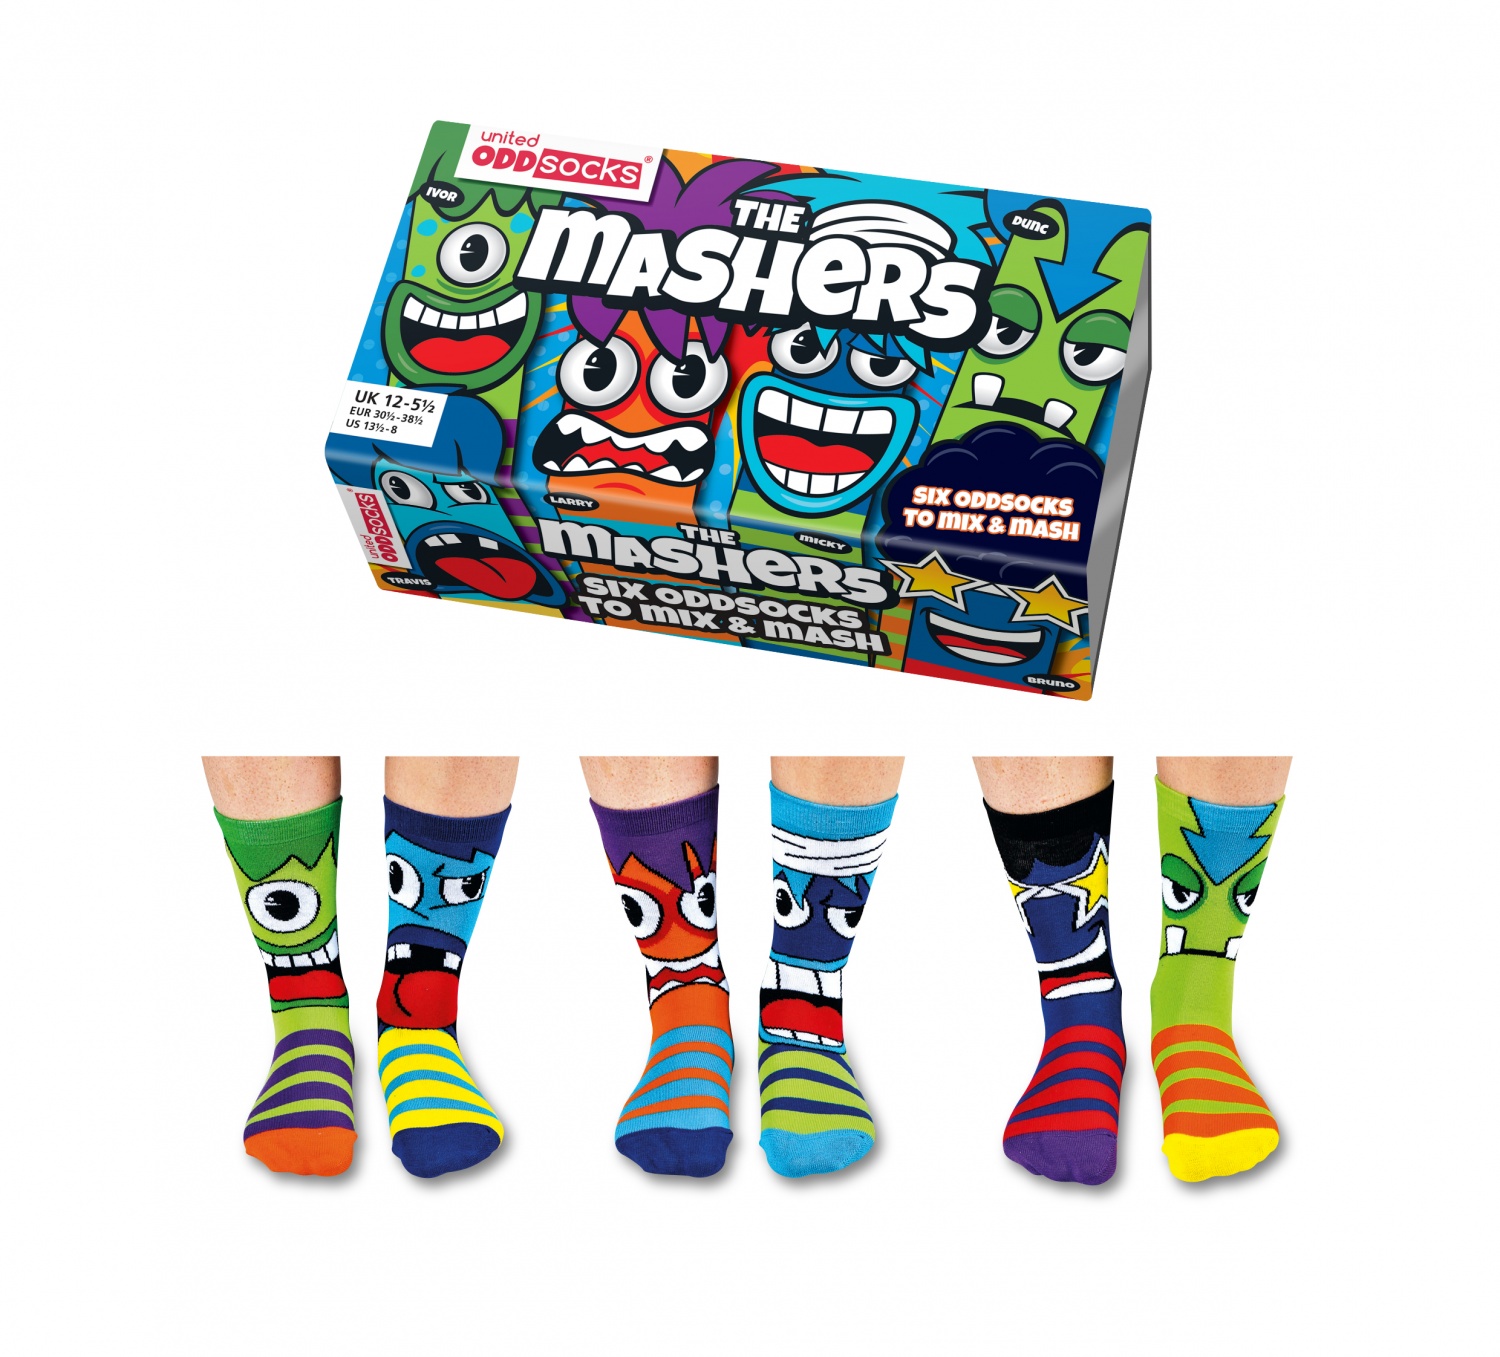 United Oddsocks - Childrens Novelty Mashers Socks - Size 12-6